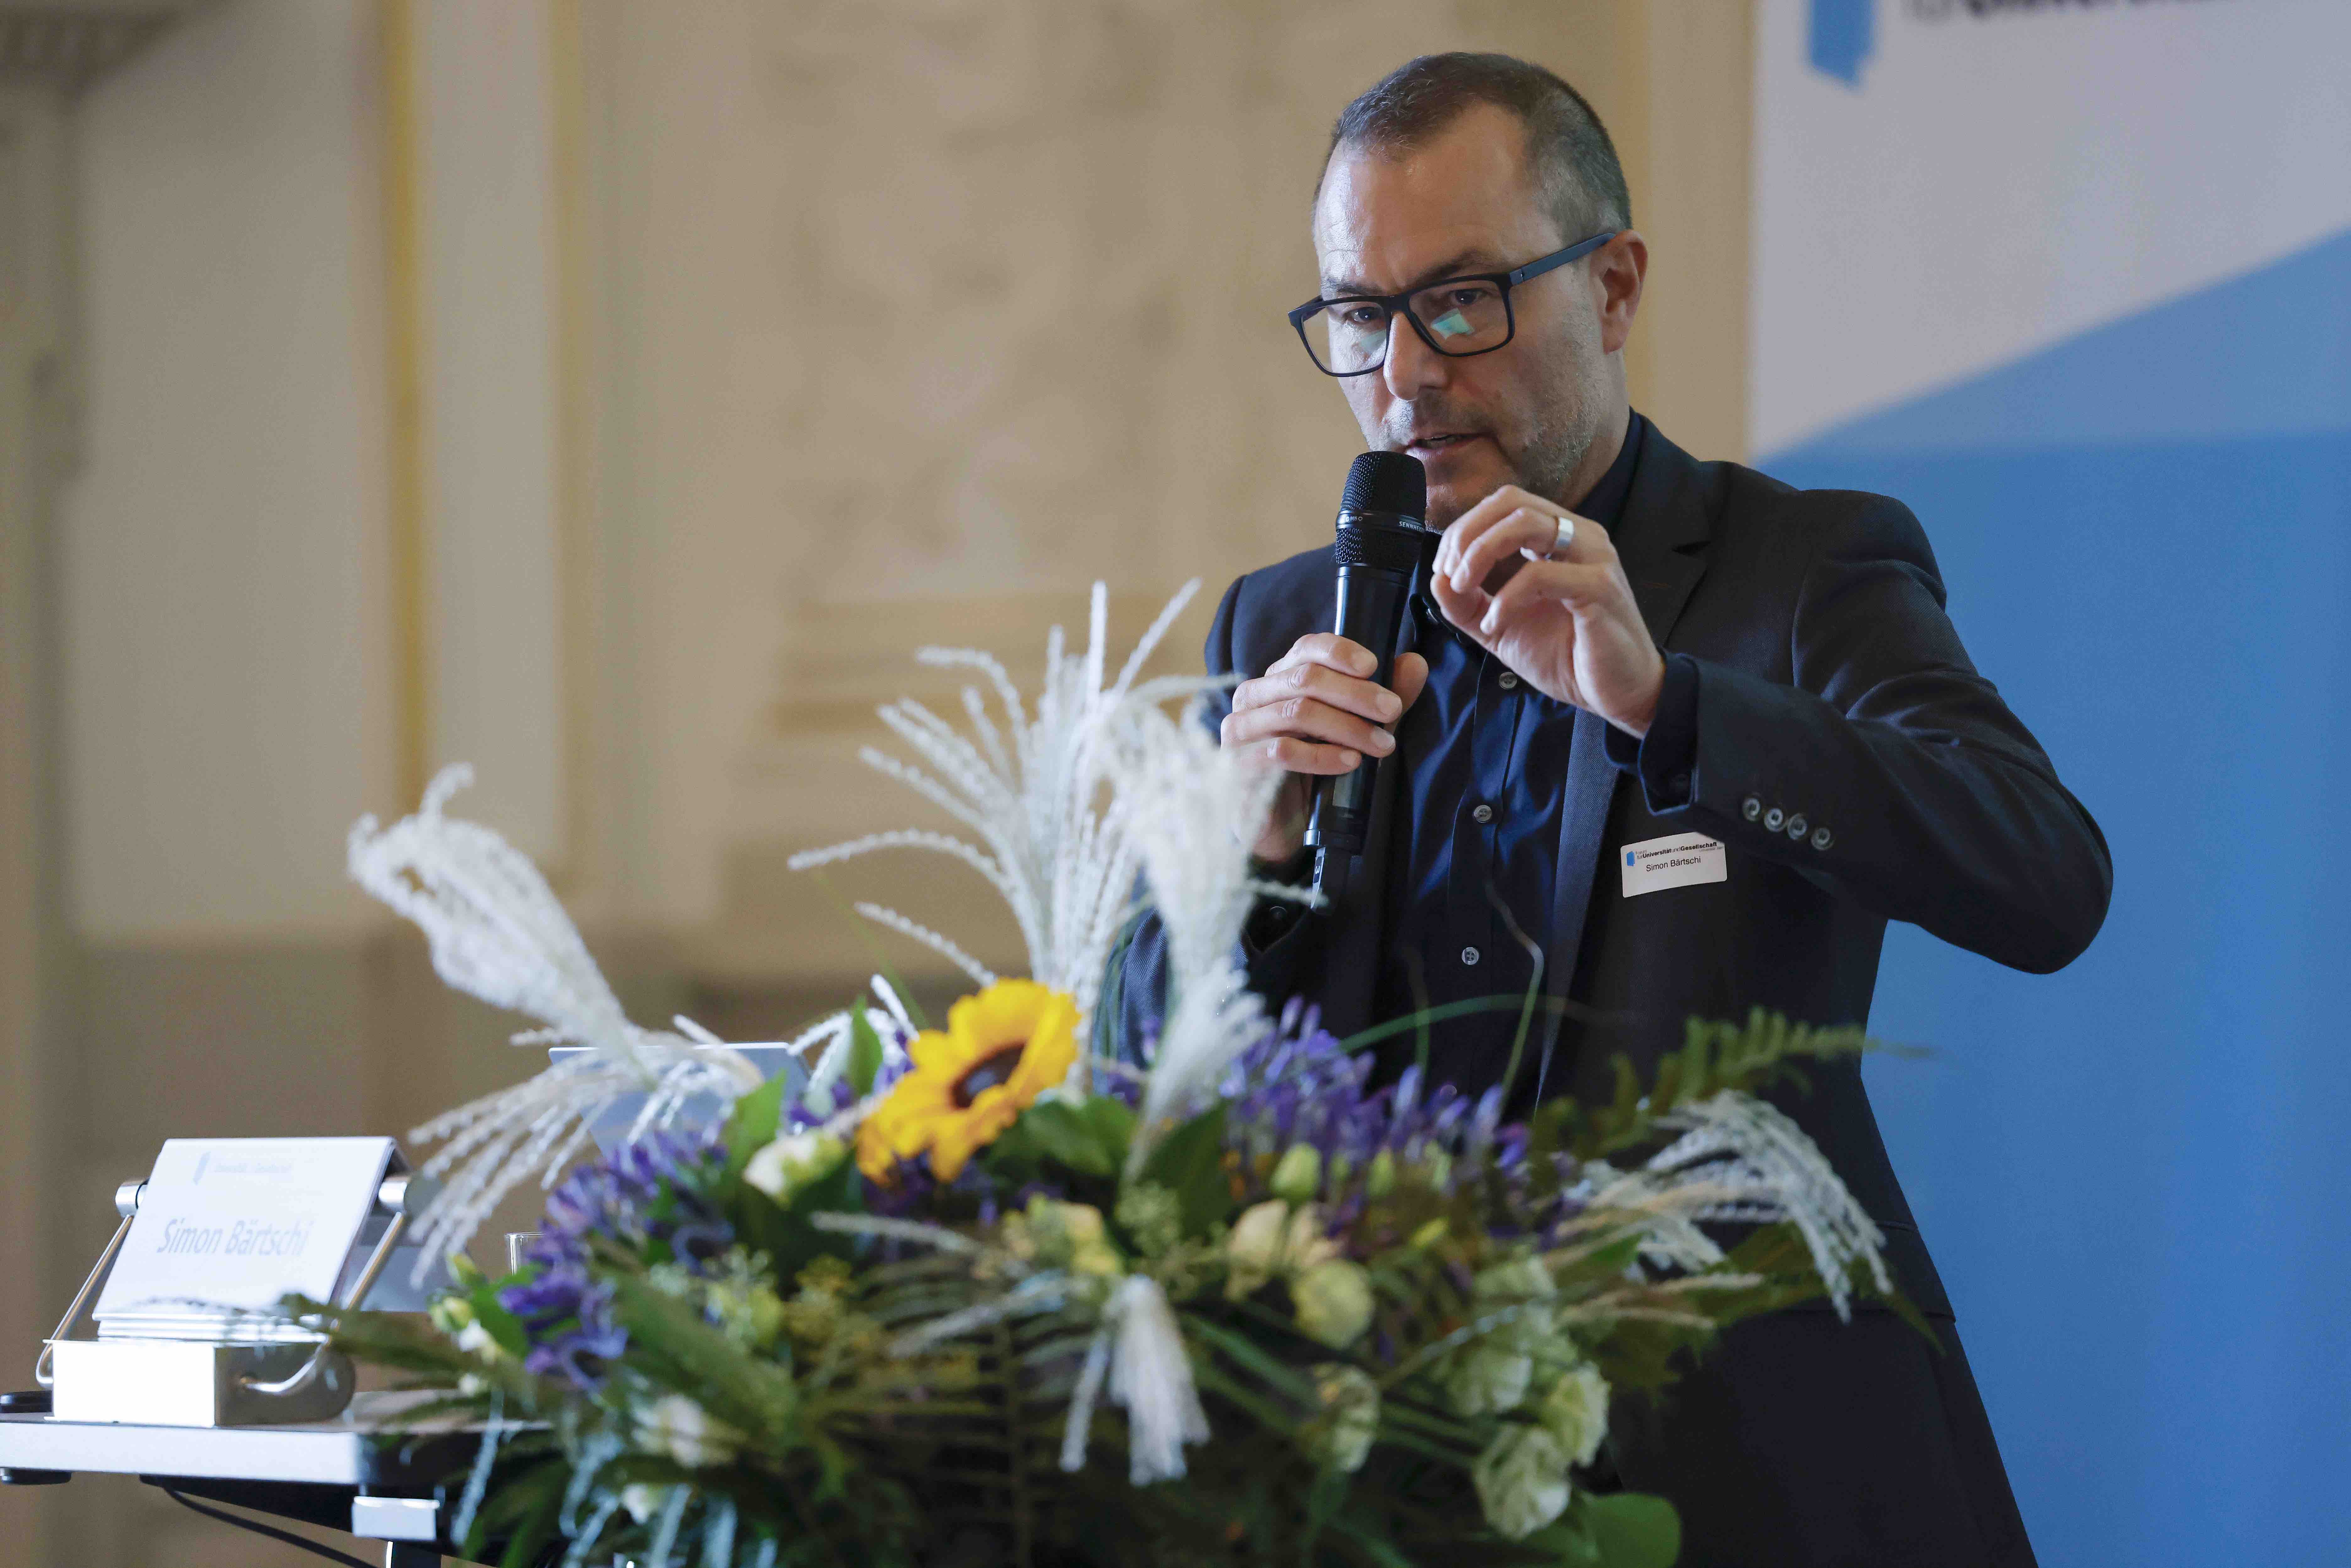 Der Referent Simon Bärtschi (Chefredaktor Berner Zeitung) steht während seinem Vortrag hinter dem Rednerpult, daneben ist ein Blumenstrauss abgestellt.